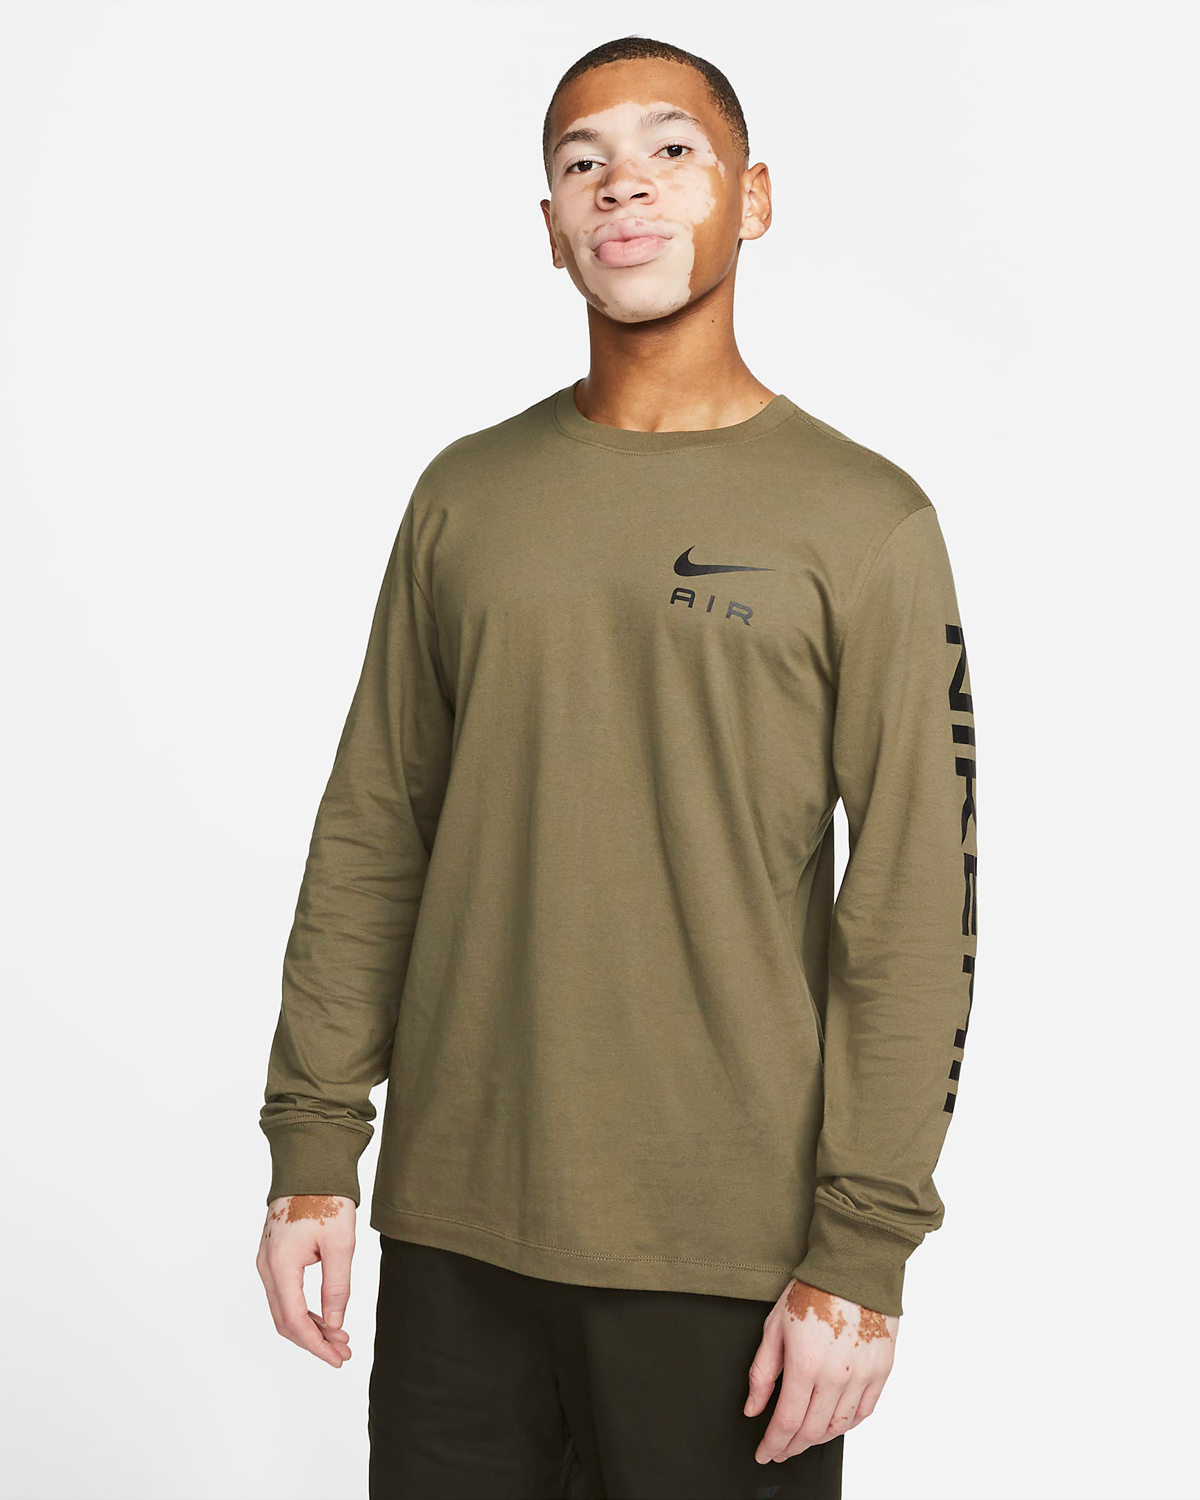 Nike-Air-Long-Sleeve-T-Shirt-Medium-Olive